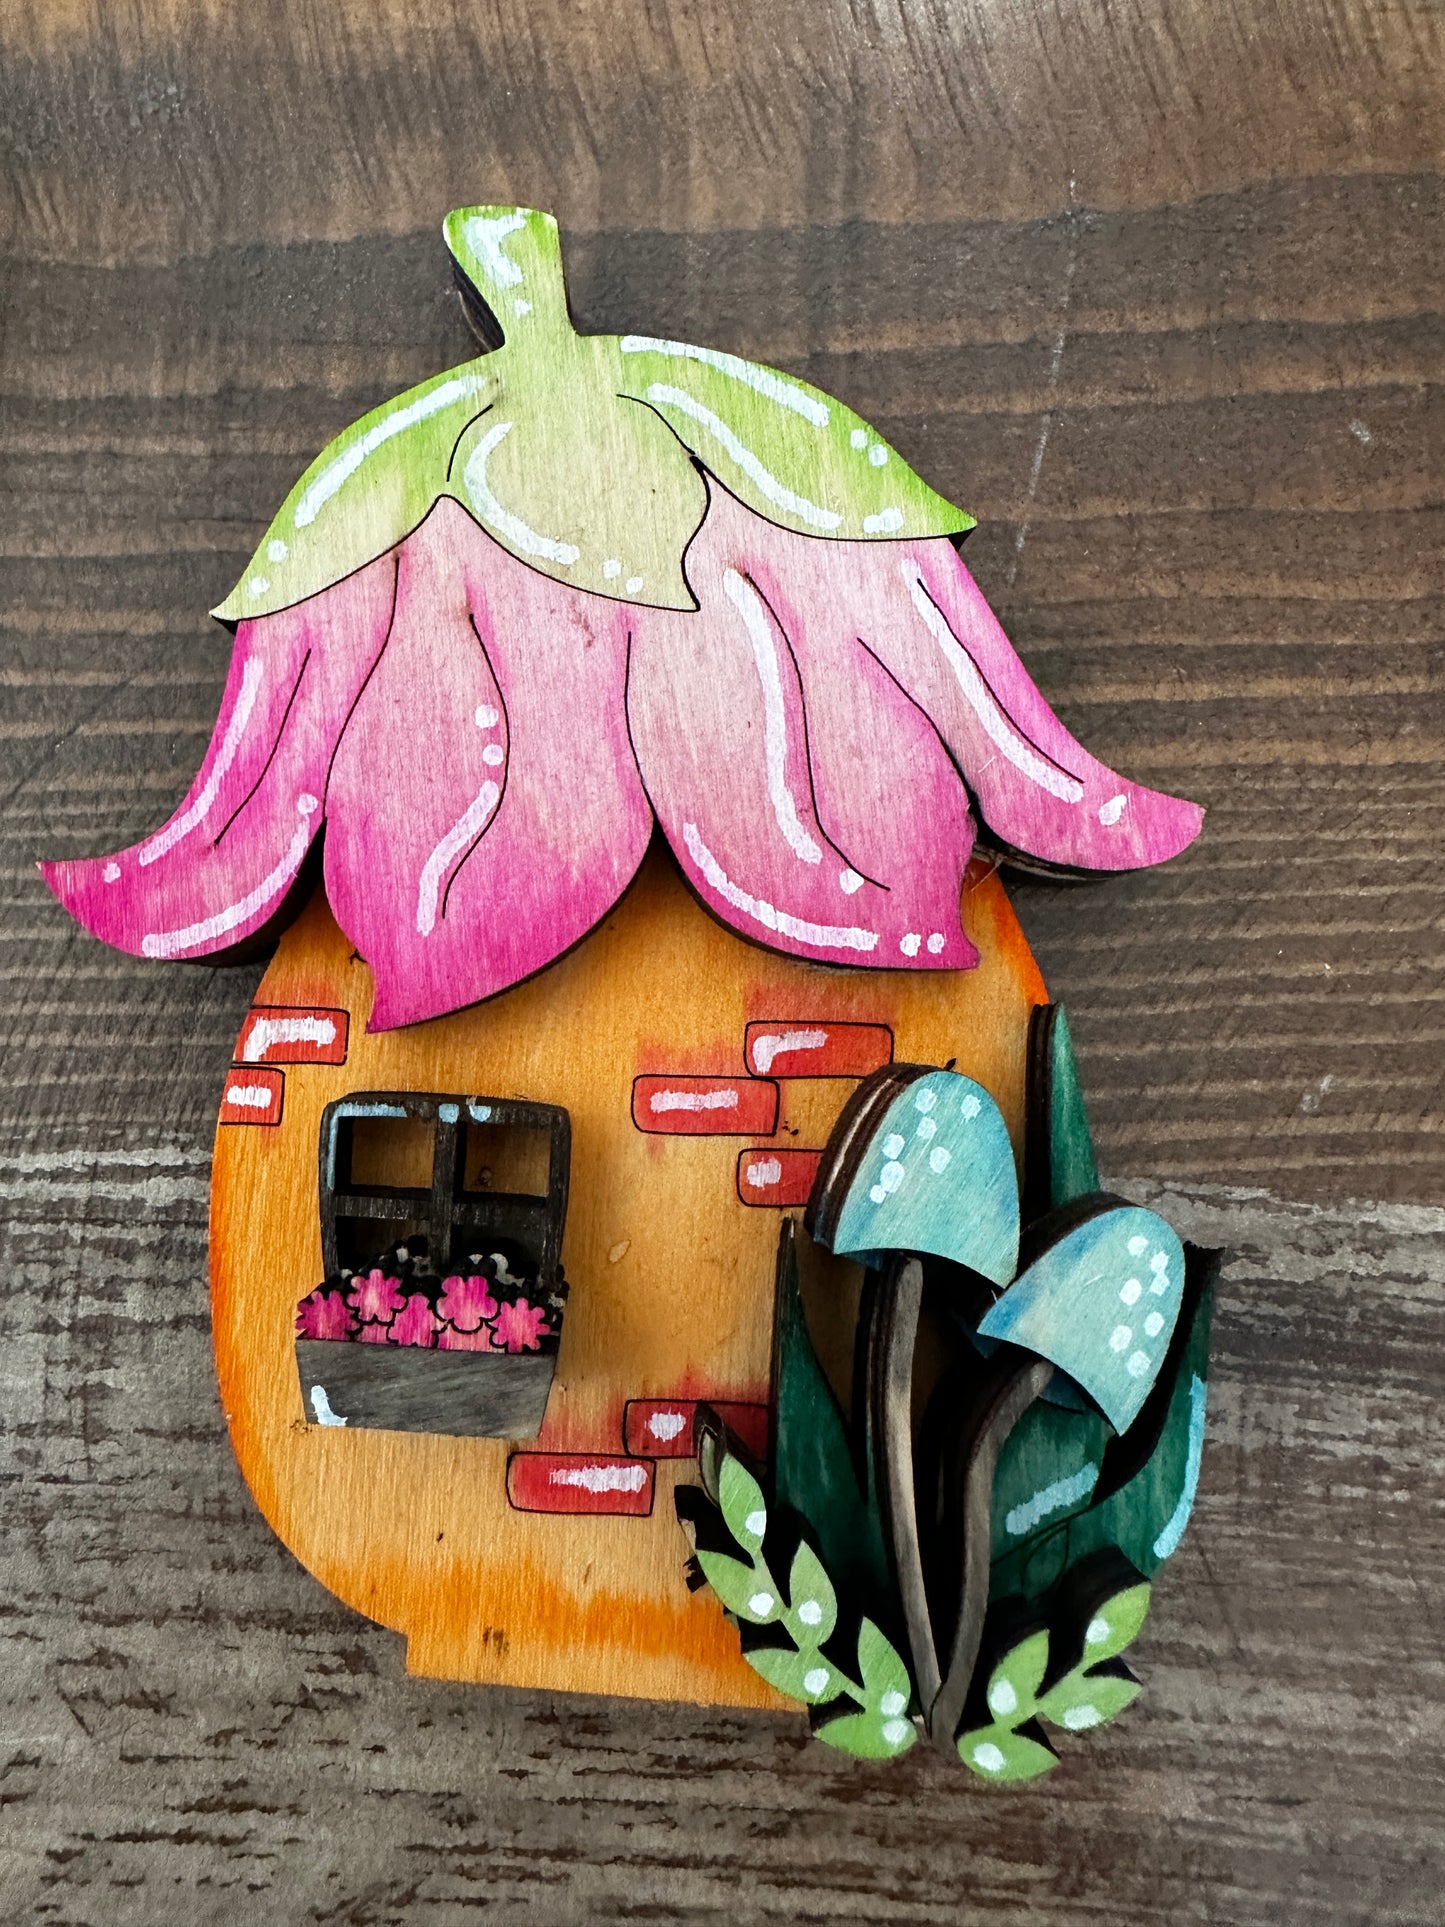 Enchanted Garden Fairy Houses - Mushroom House